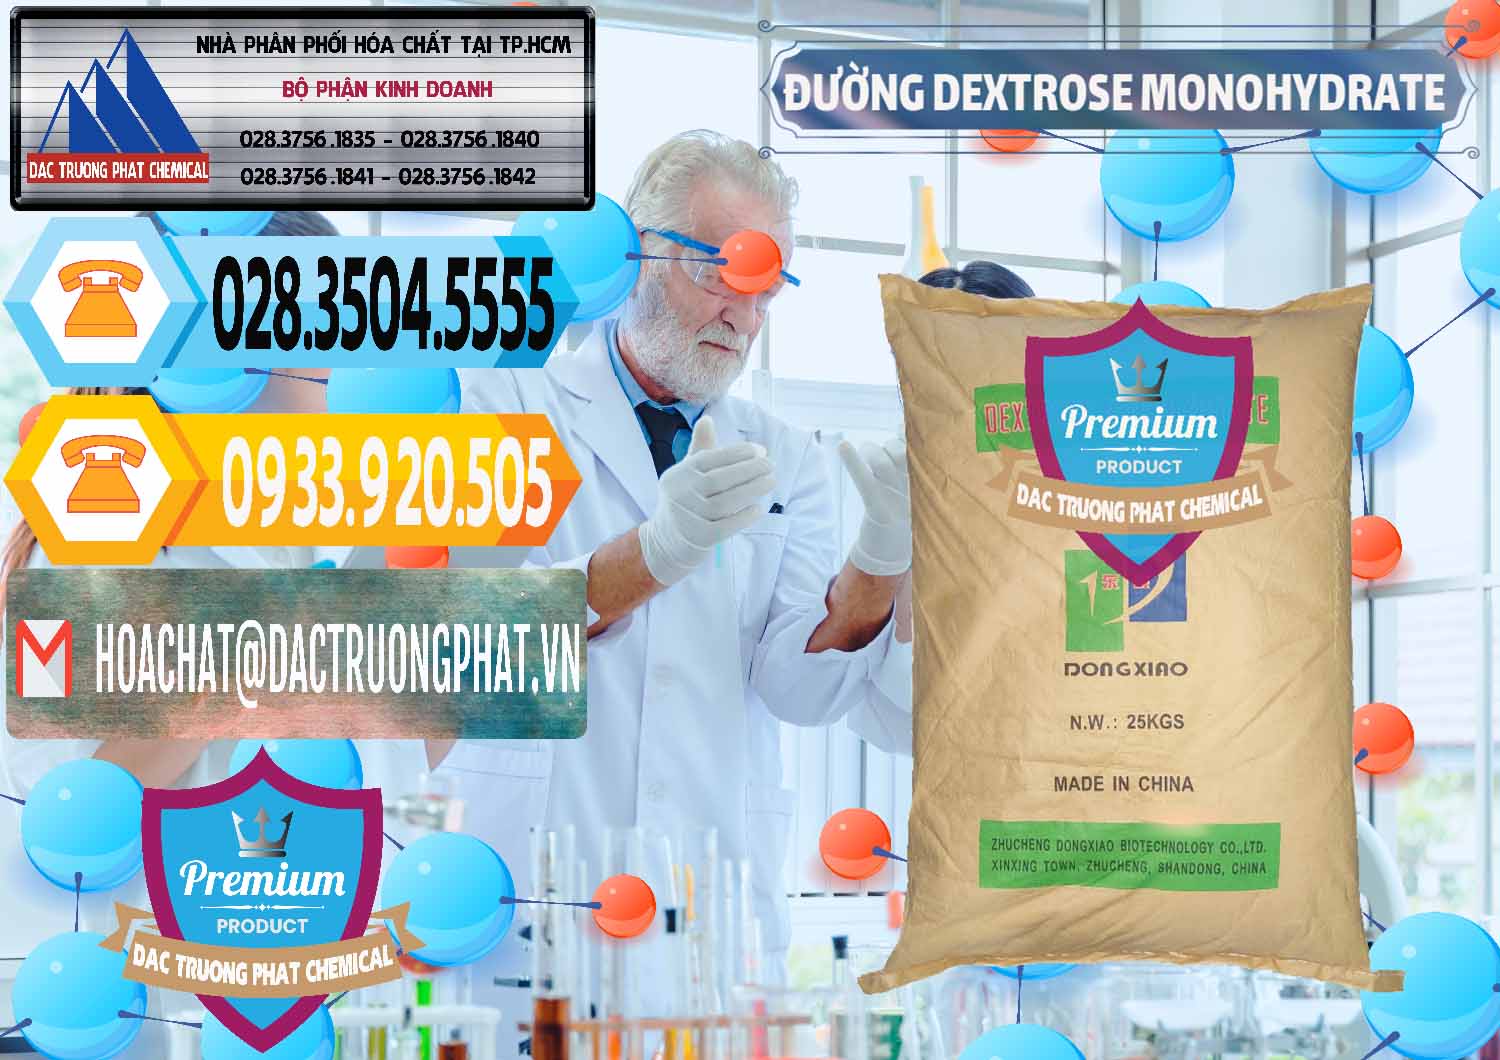 Đơn vị chuyên cung ứng và bán Đường Dextrose Monohydrate Food Grade Dongxiao Trung Quốc China - 0063 - Công ty chuyên cung ứng - phân phối hóa chất tại TP.HCM - hoachattayrua.net